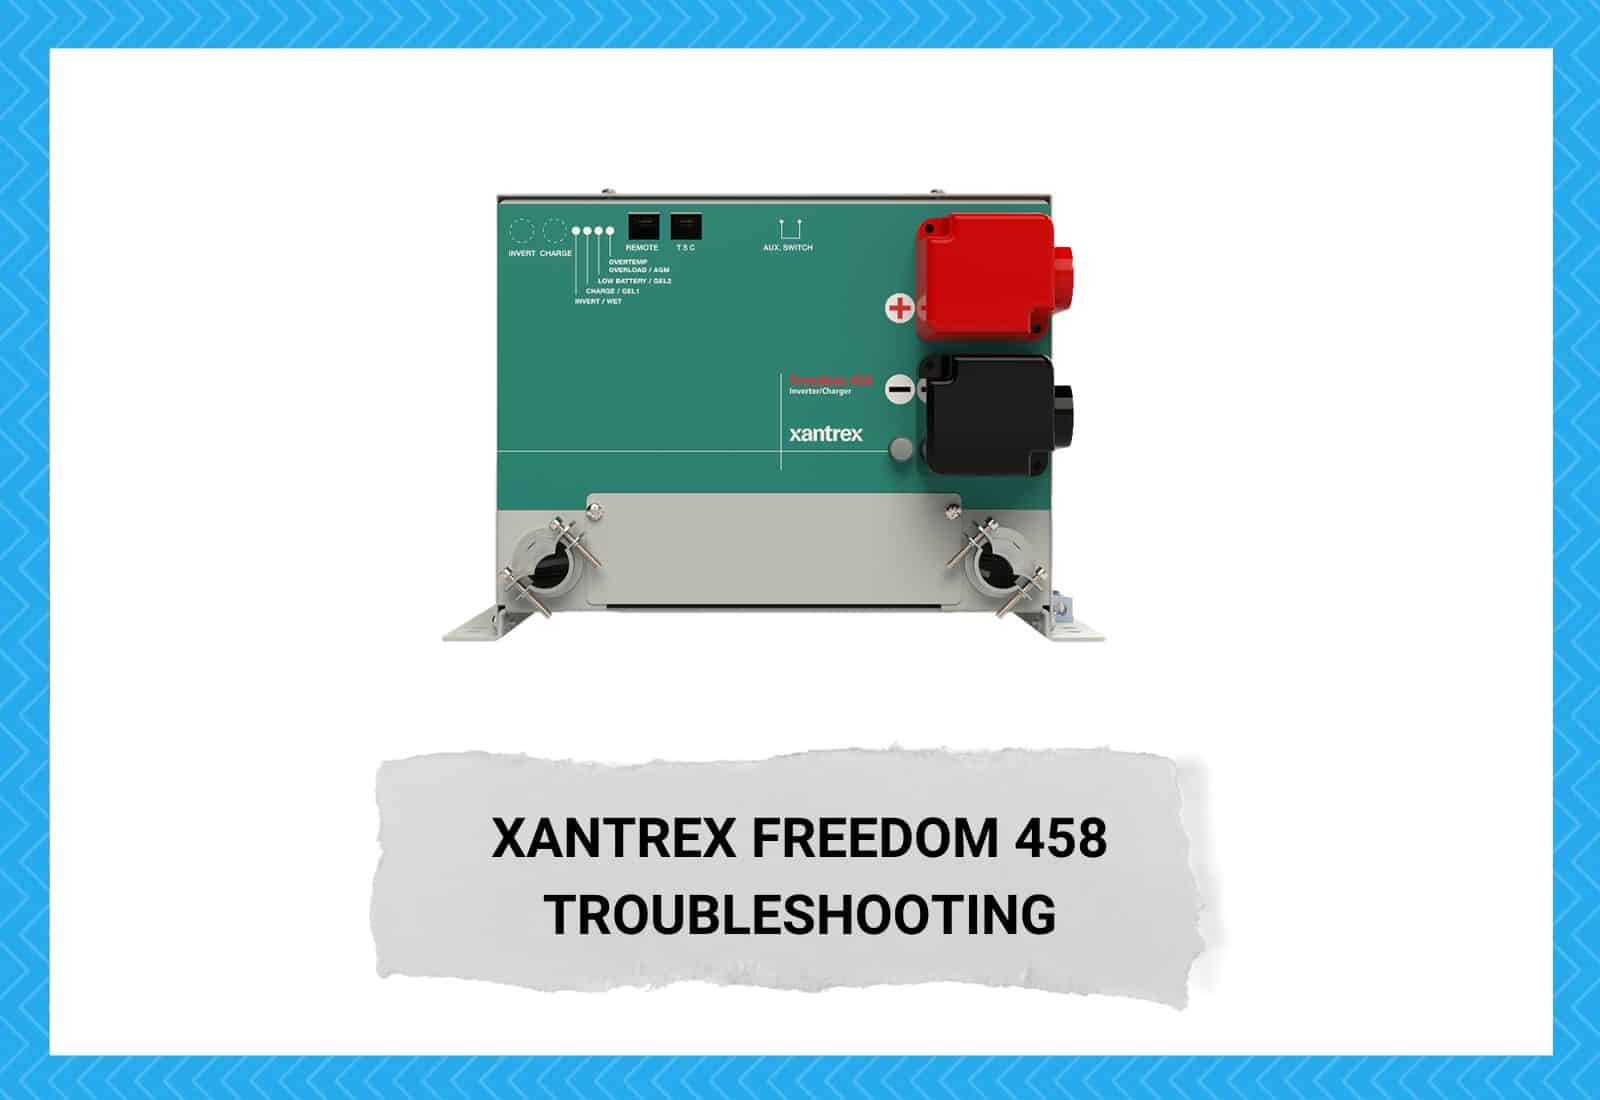 Xantrex Freedom 458 Troubleshooting